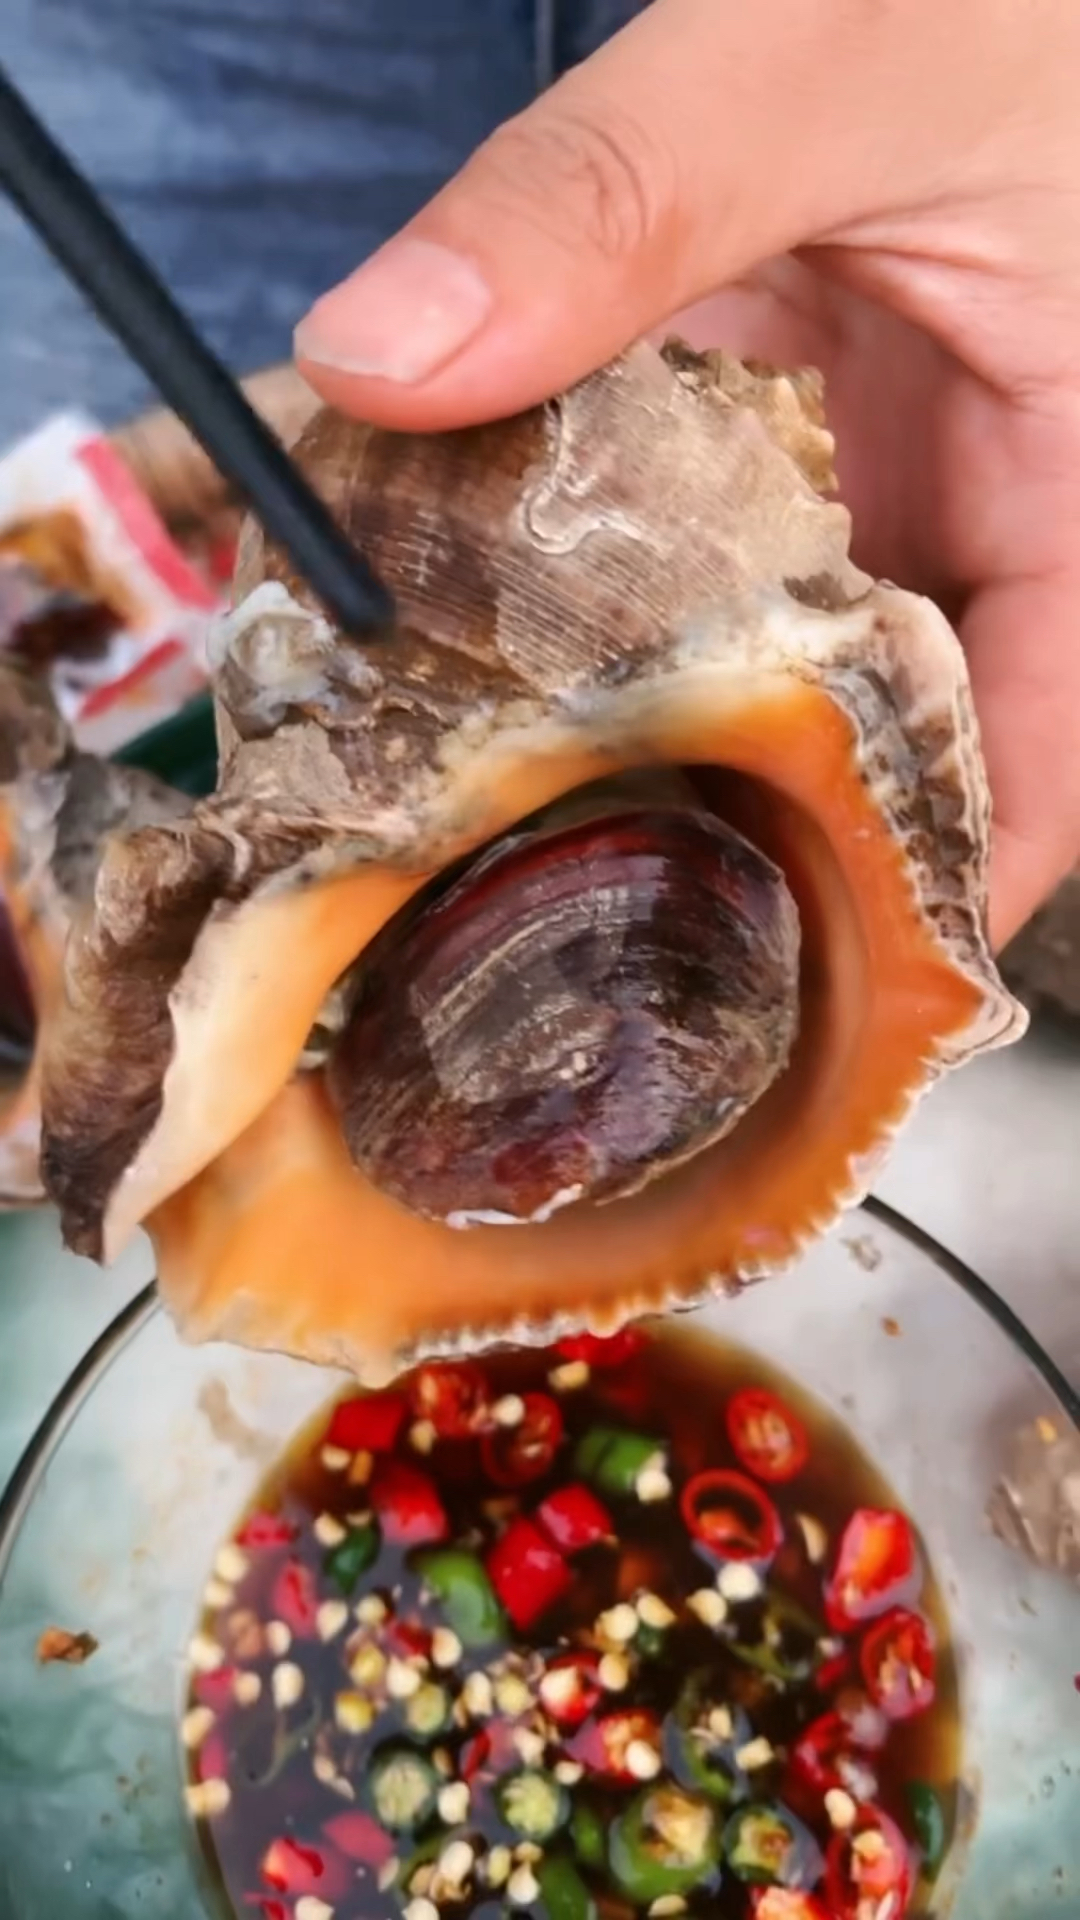 快手海鲜--葱油螺片的做法_【图解】快手海鲜--葱油螺片怎么做如何做好吃_快手海鲜--葱油螺片家常做法大全_阿罗al_豆果美食